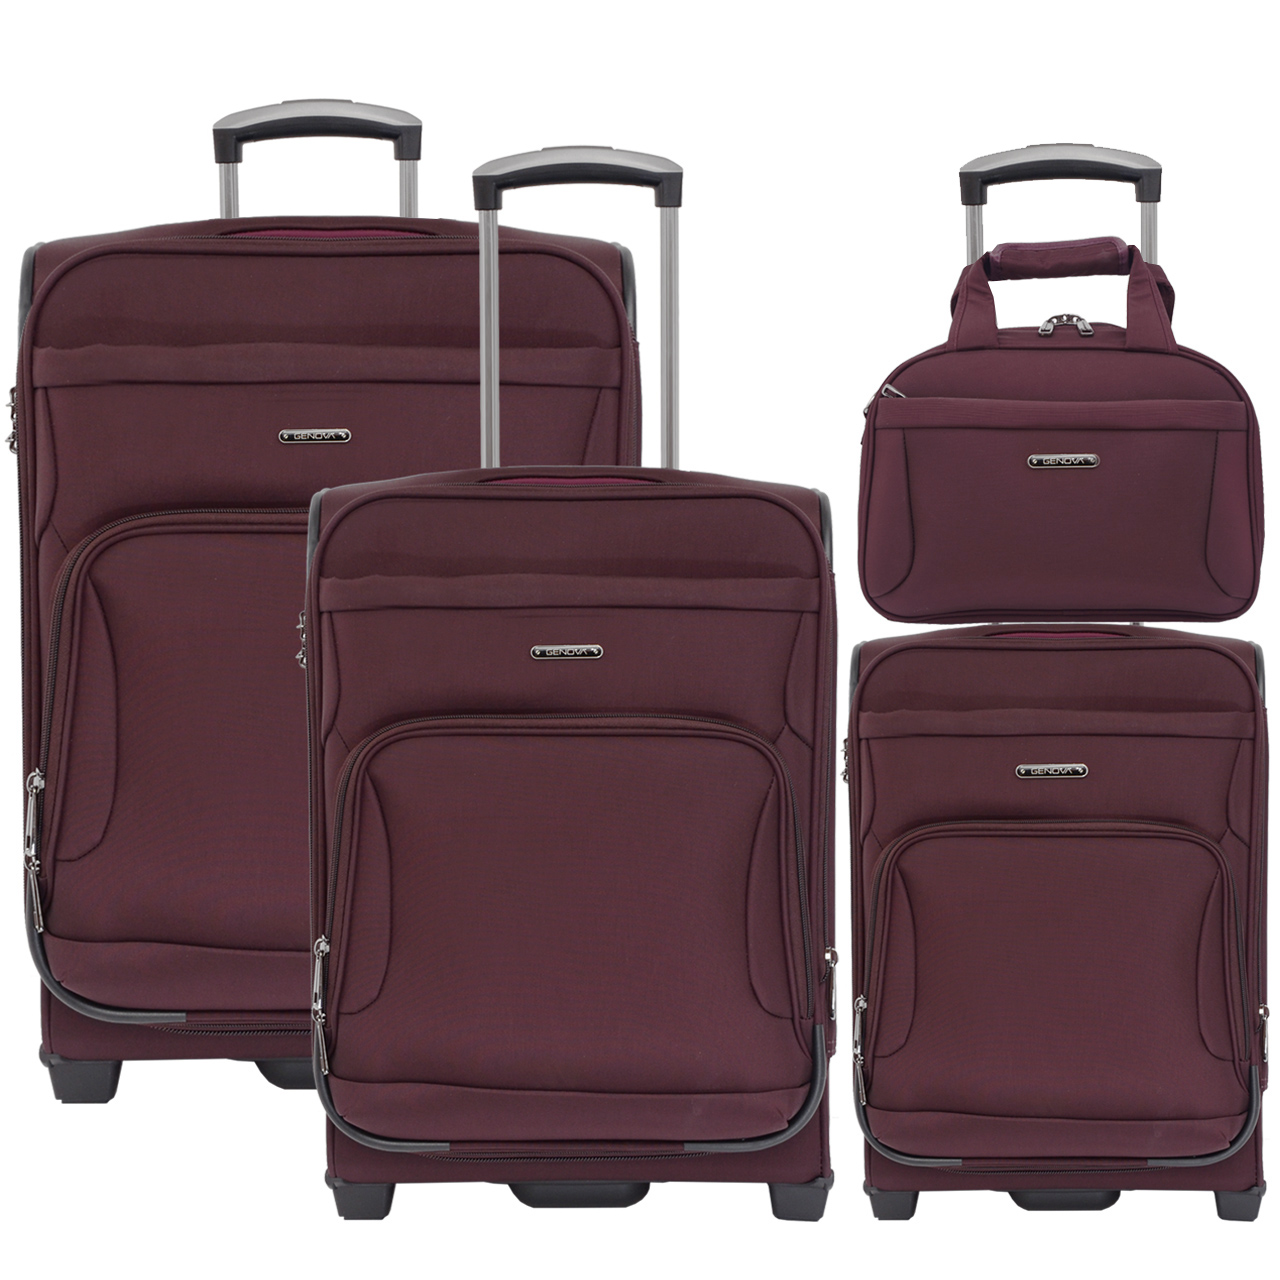 مجموعه چهار عددی چمدان جنووا مدل 700057 کد 229077